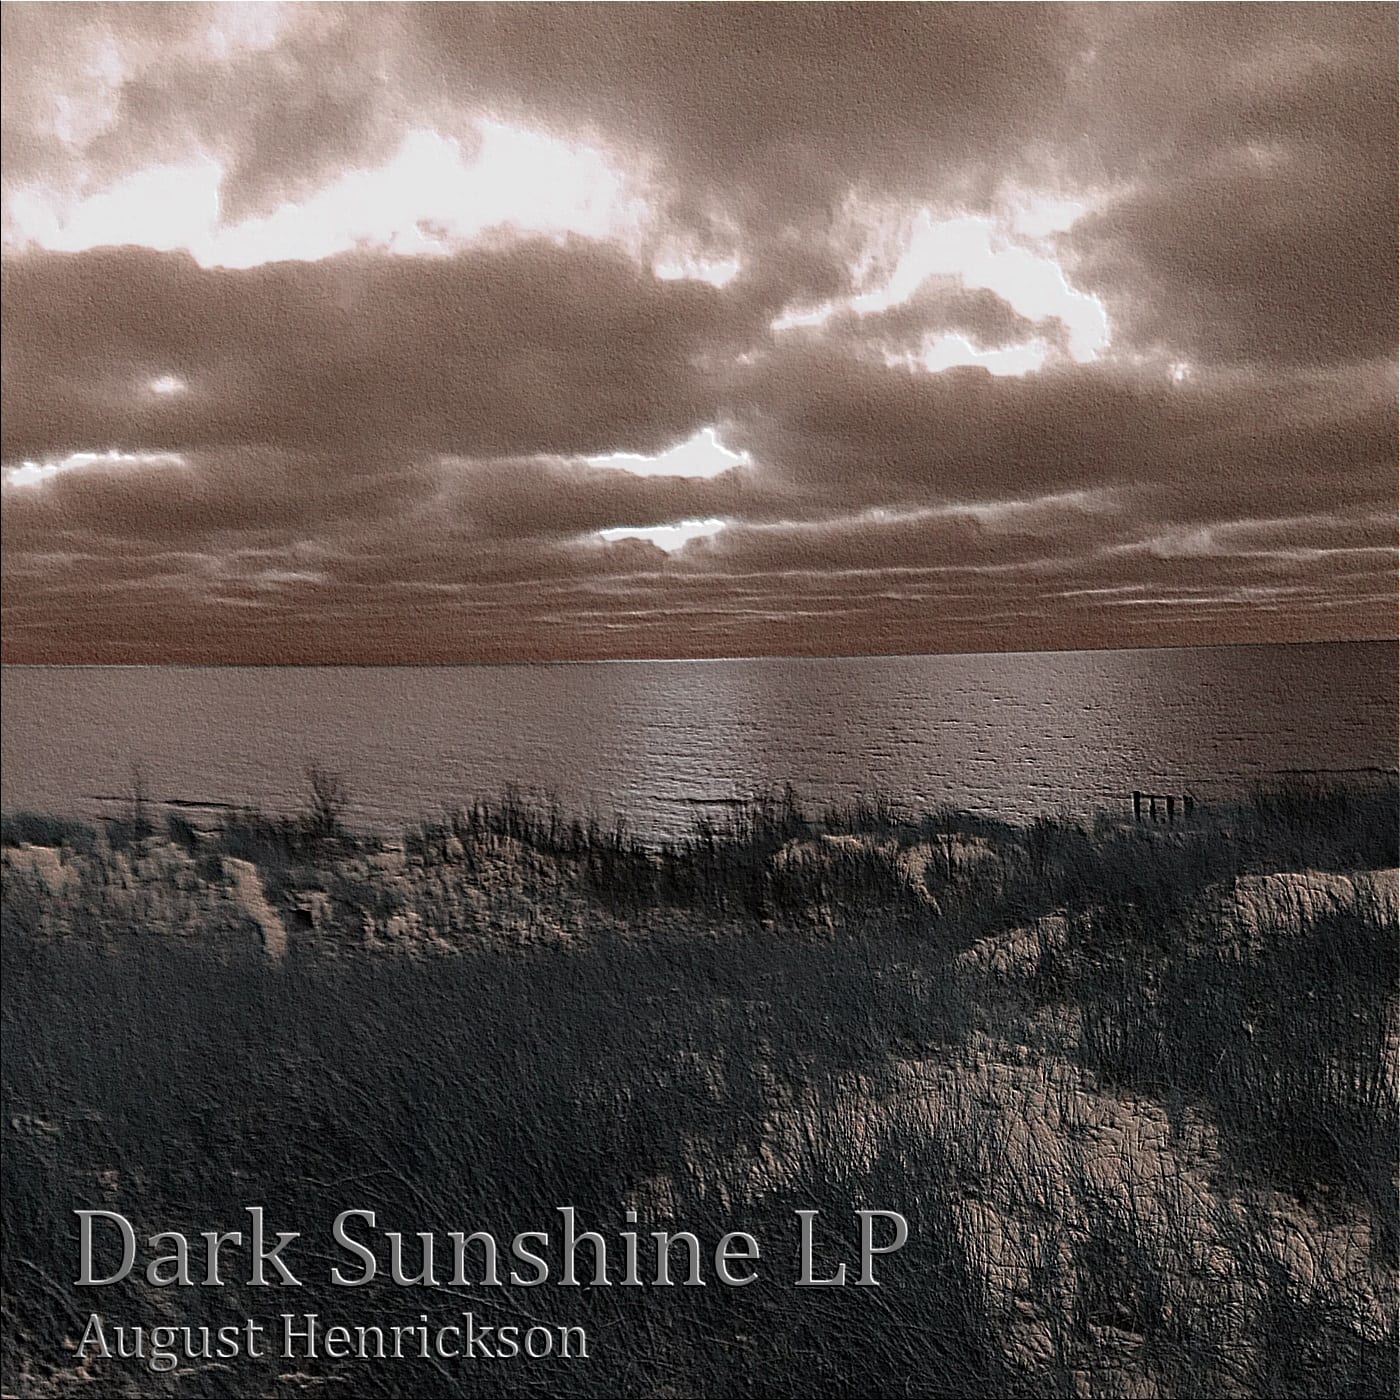 August Henrickson Drops New Album - "Dark Sunshine LP"